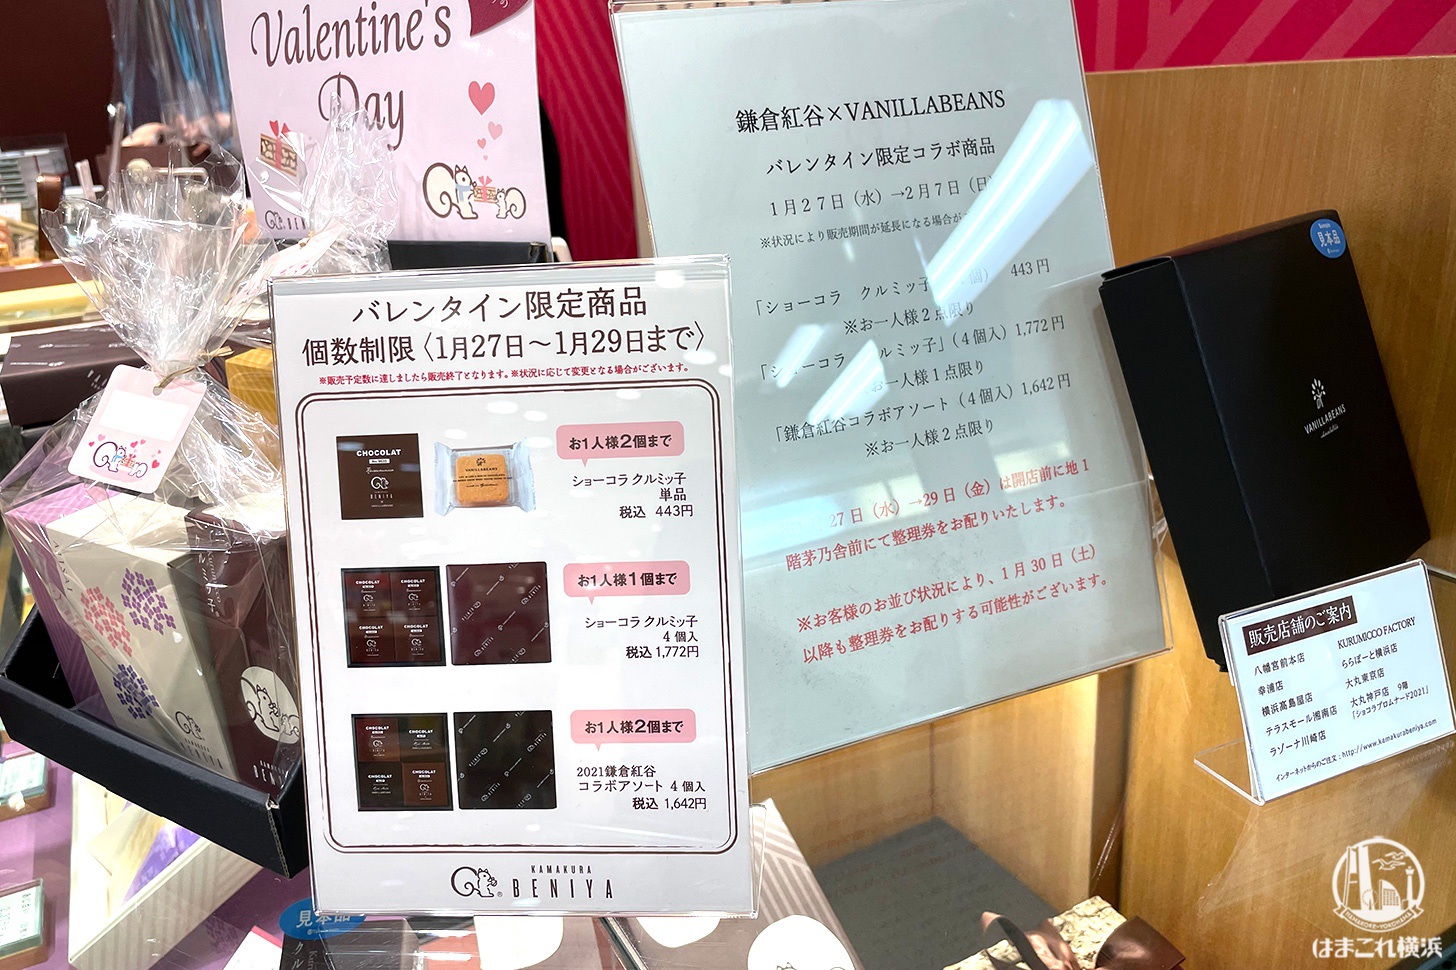 横浜高島屋 鎌倉紅谷 バレンタイン限定商品 概要